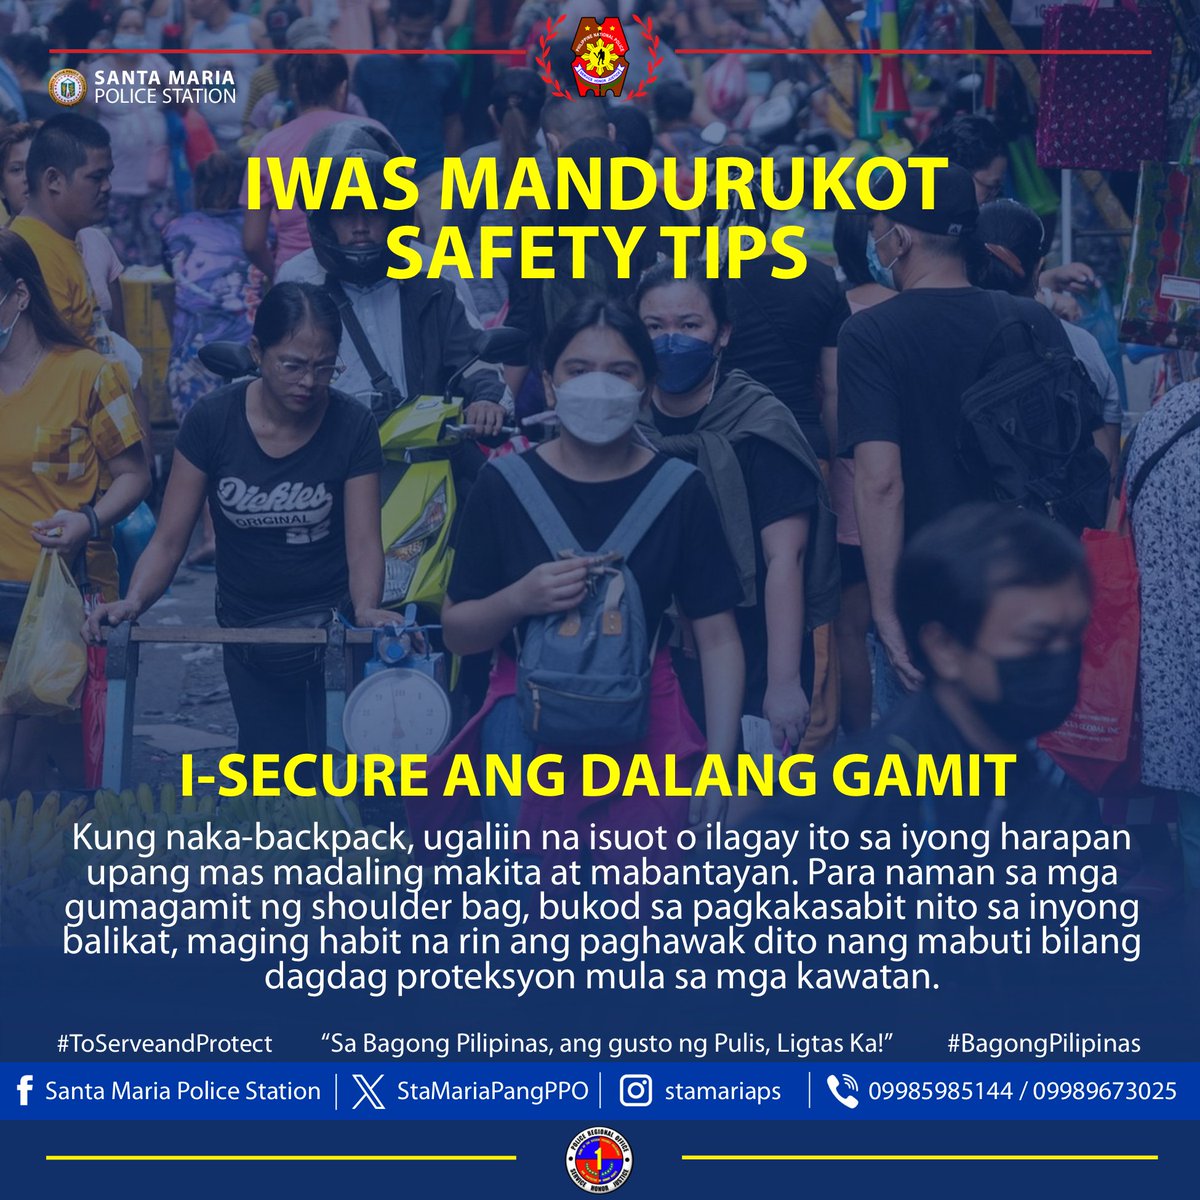 Iwas Mandurukot Ligtas Tips I-secure ang dalang gamit. '𝐒𝐚 𝐁𝐚𝐠𝐨𝐧𝐠 𝐏𝐢𝐥𝐢𝐩𝐢𝐧𝐚𝐬, 𝐚𝐧𝐠 𝐆𝐮𝐬𝐭𝐨 𝐧𝐠 𝐏𝐮𝐥𝐢𝐬, 𝐋𝐢𝐠𝐭𝐚𝐬 𝐊𝐚!' #BagongPilipinas #ToServeandProtect